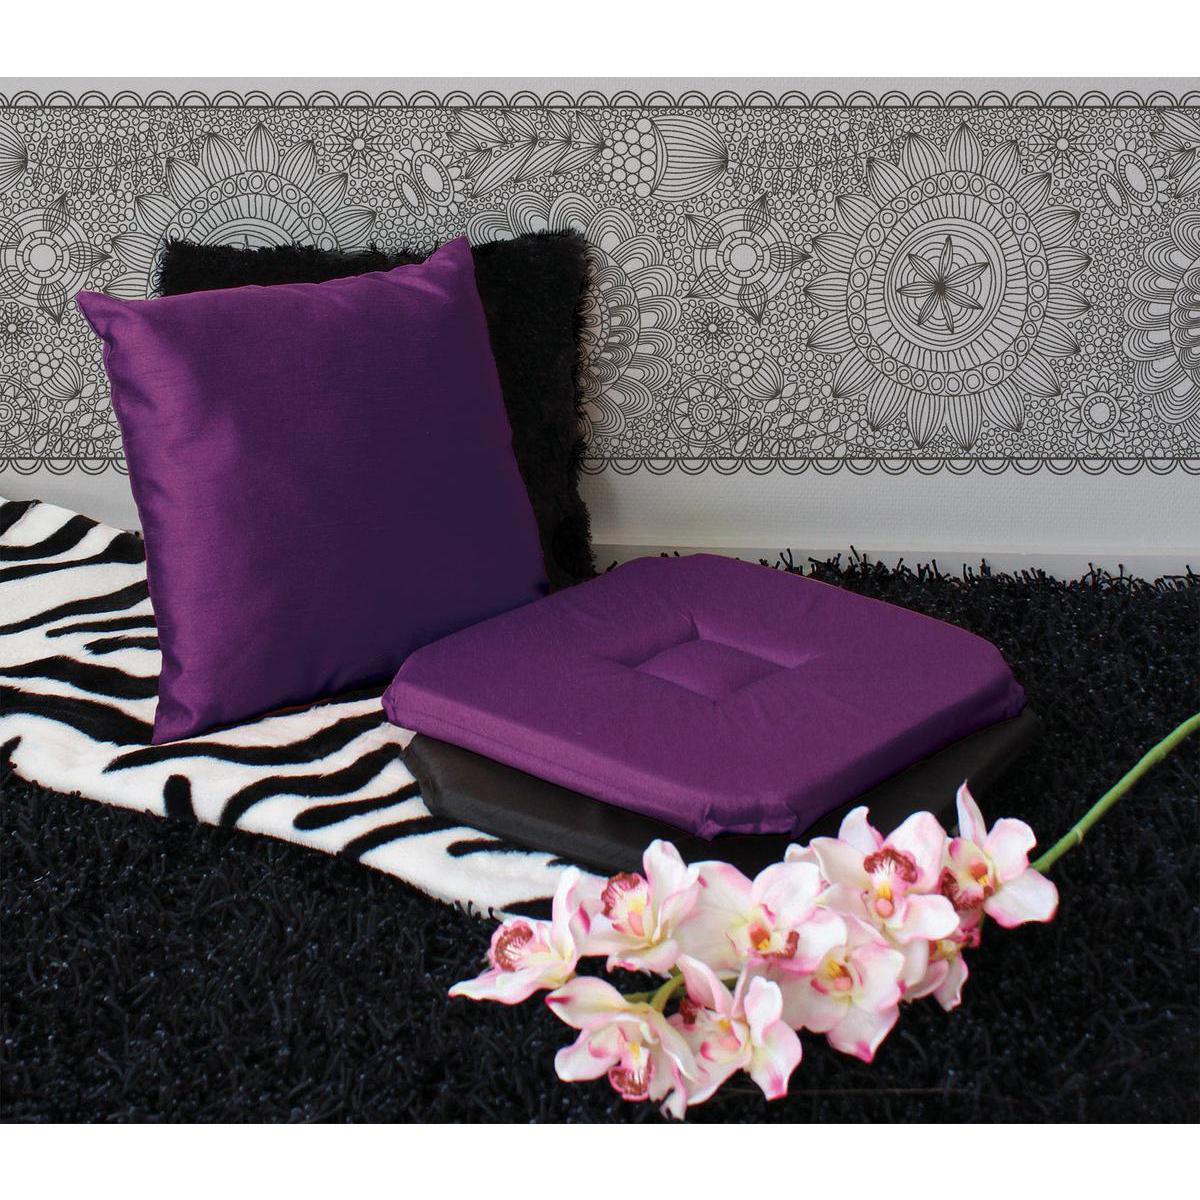 Galette de chaise - 100% polyestser - 40 x 40 cm - Violet